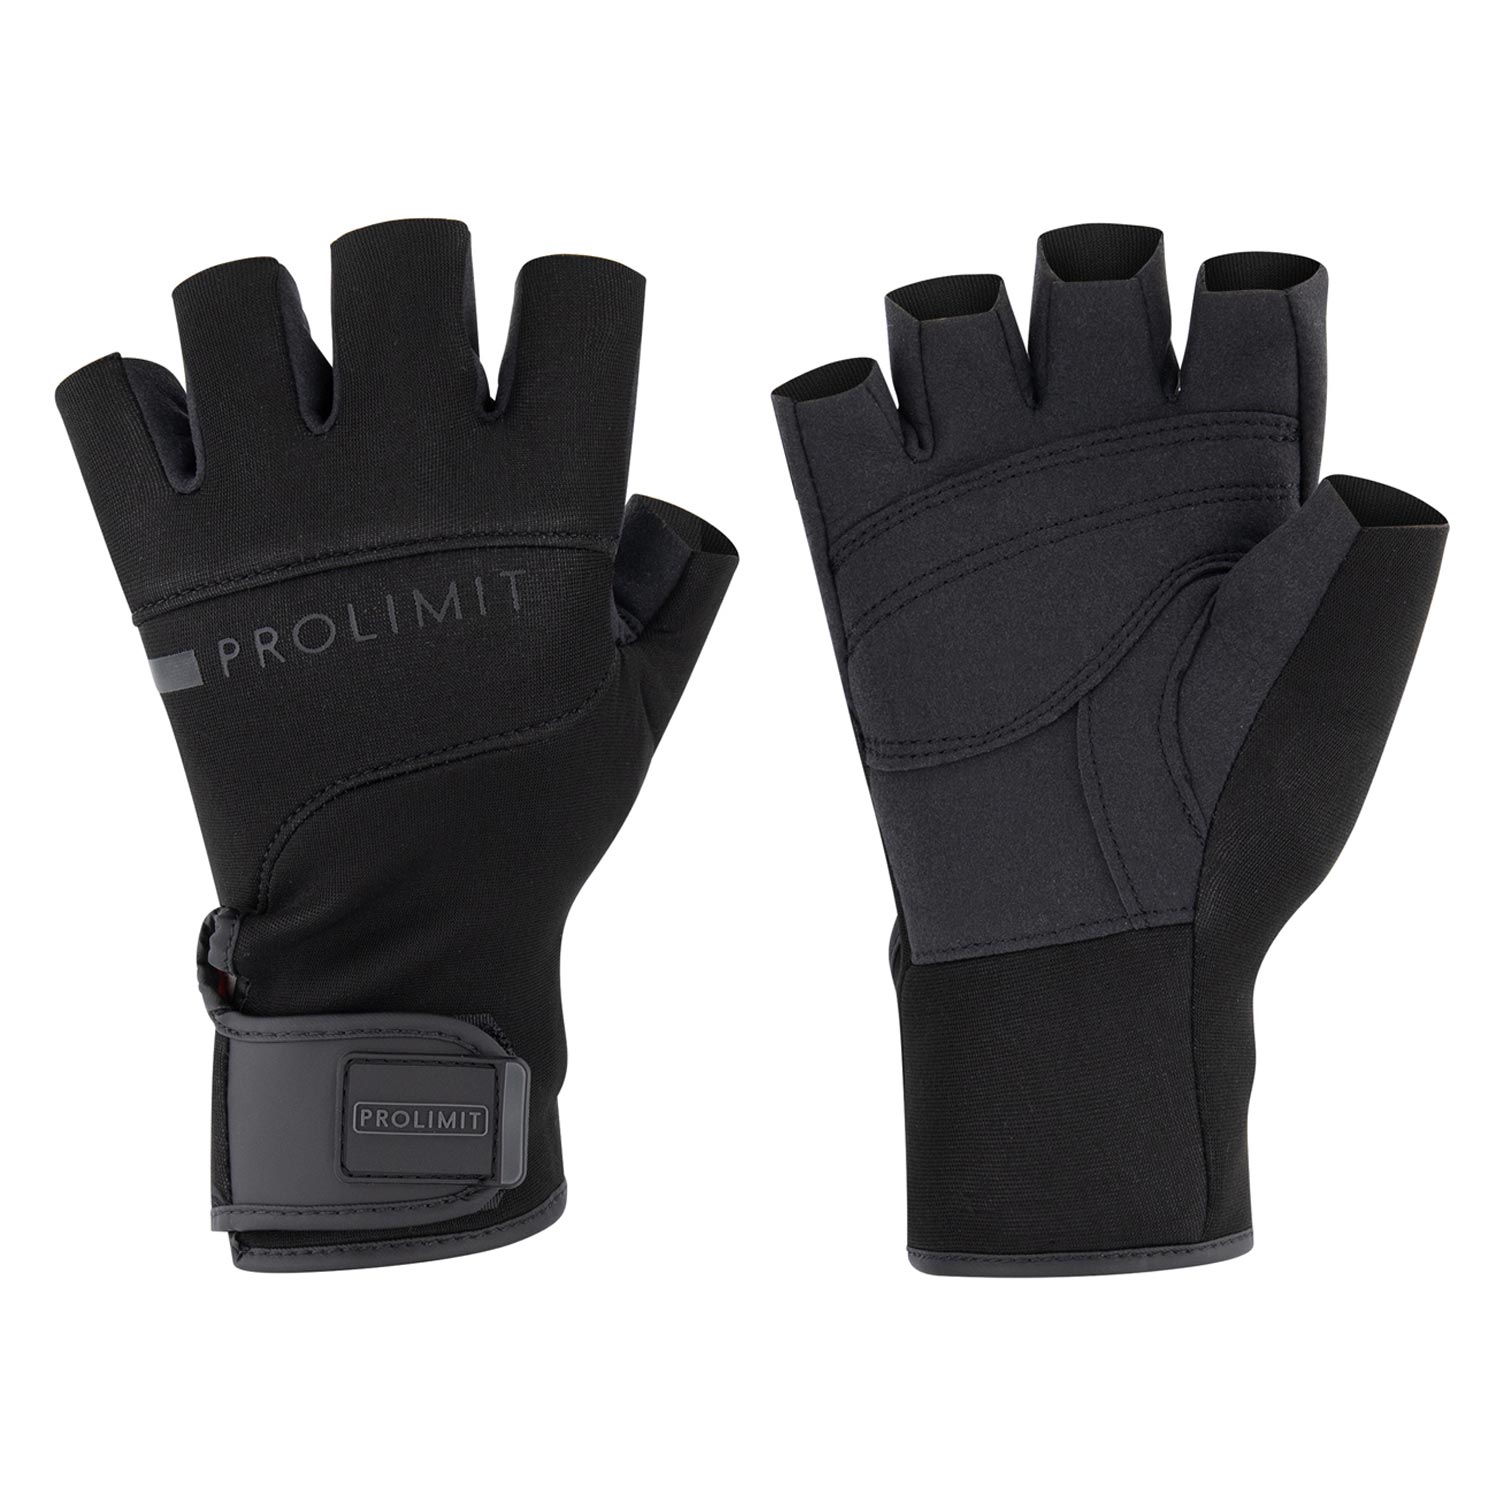 Gloves Shortfinger HS Utility